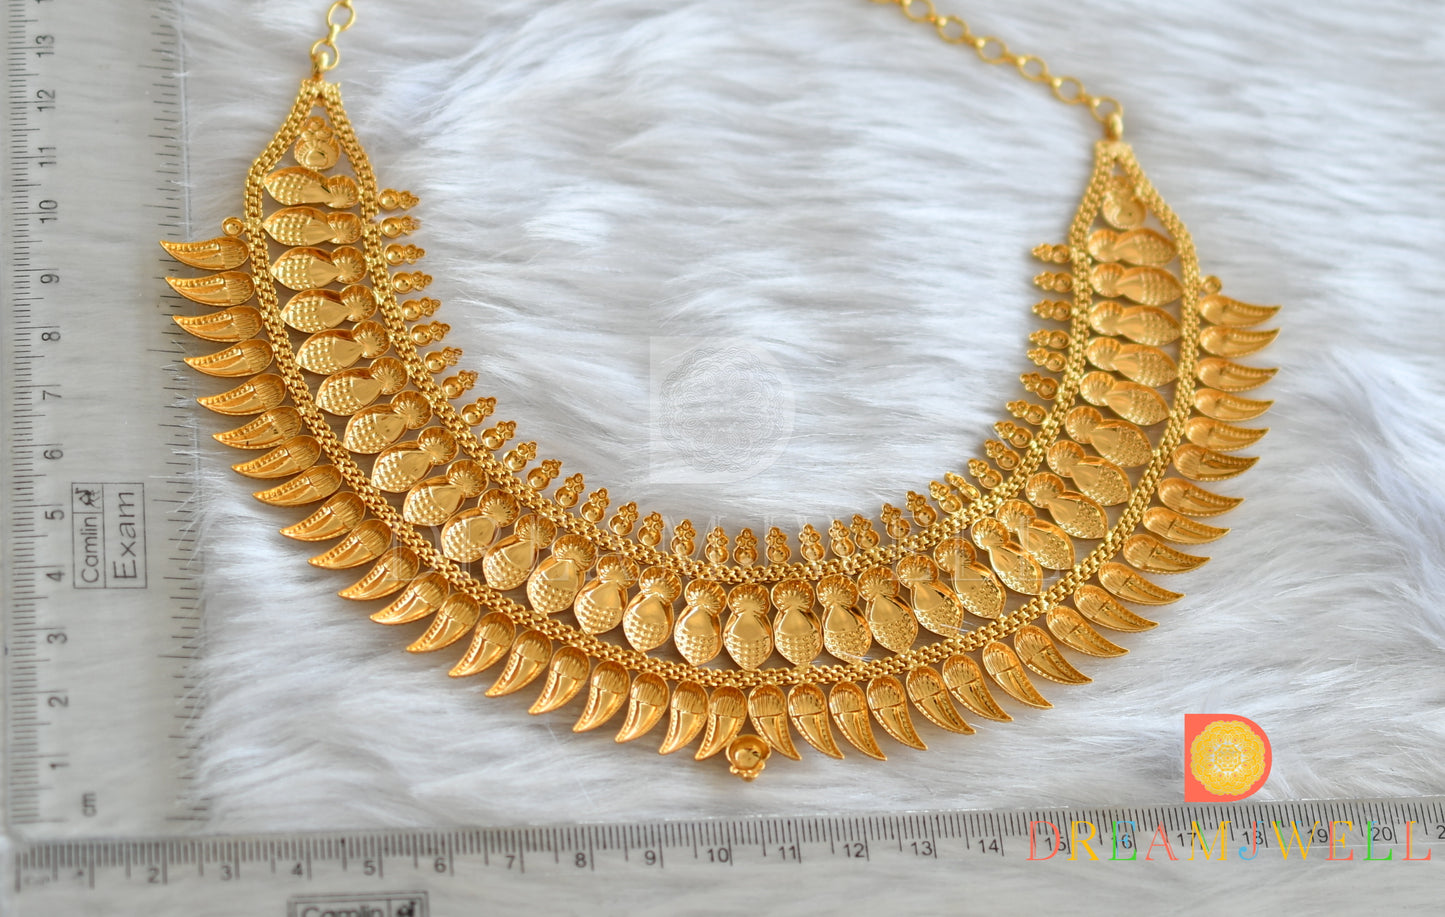 Gold tone mango Kerala style Broad choker/necklace dj-38135